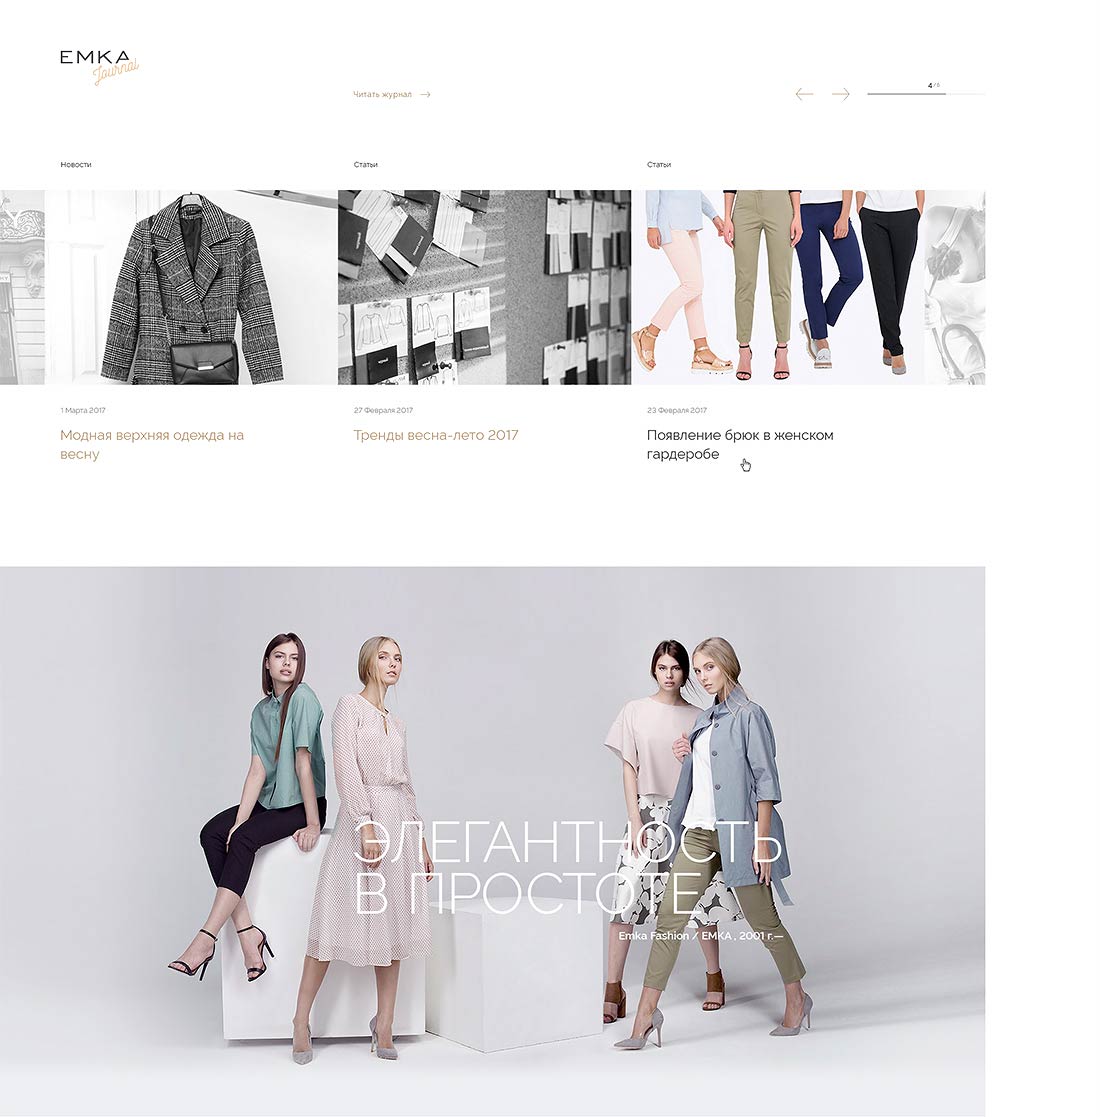 Дизайн главной страницы сайта оптового интернет-магазина женской одежды Emka.